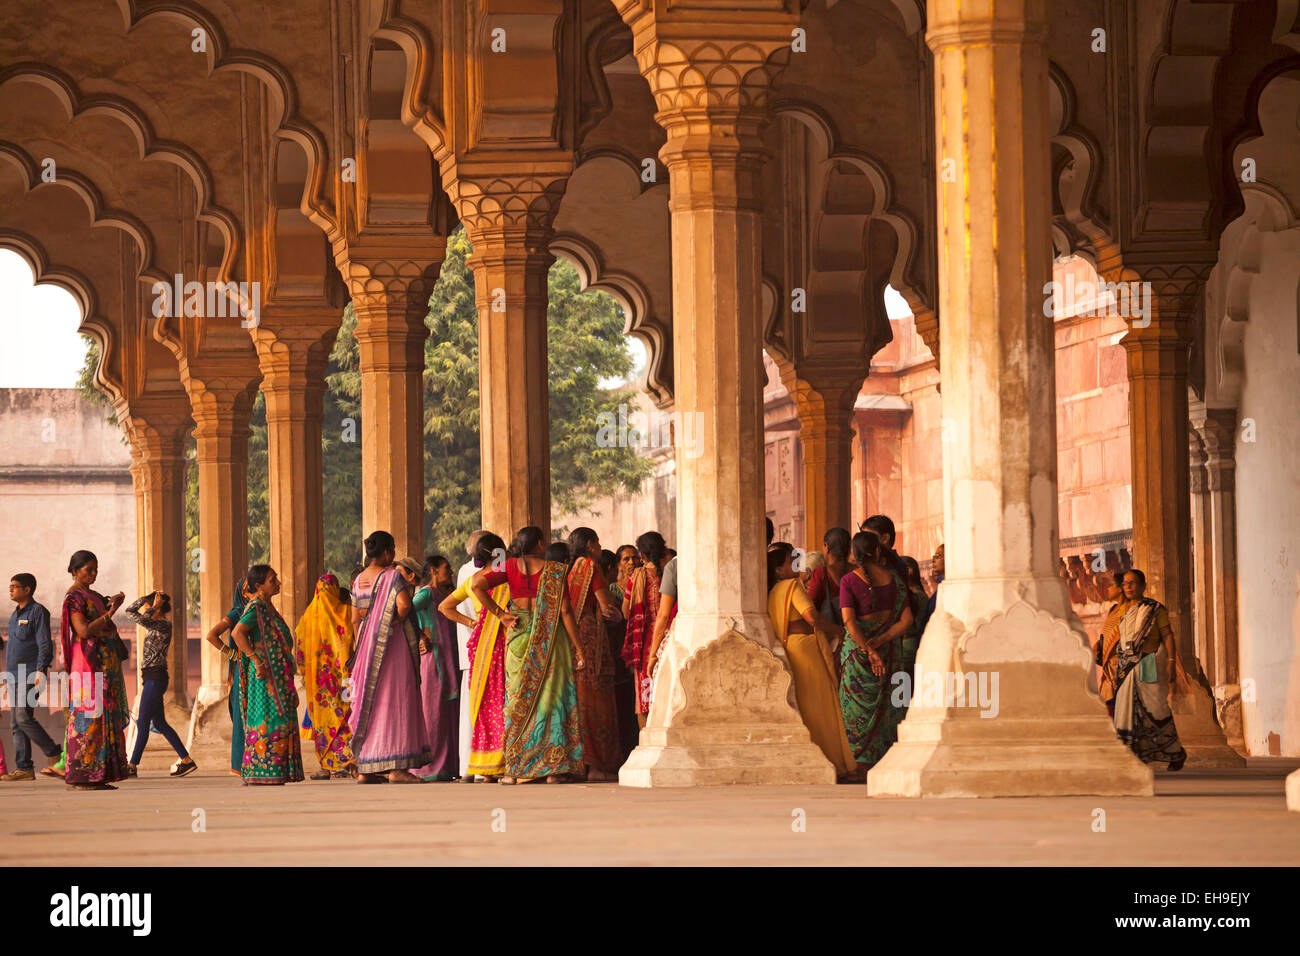 Besucher in der Säulenhalle im Roten Fort, Agra, Uttar Pradesh, Indien Stockfoto